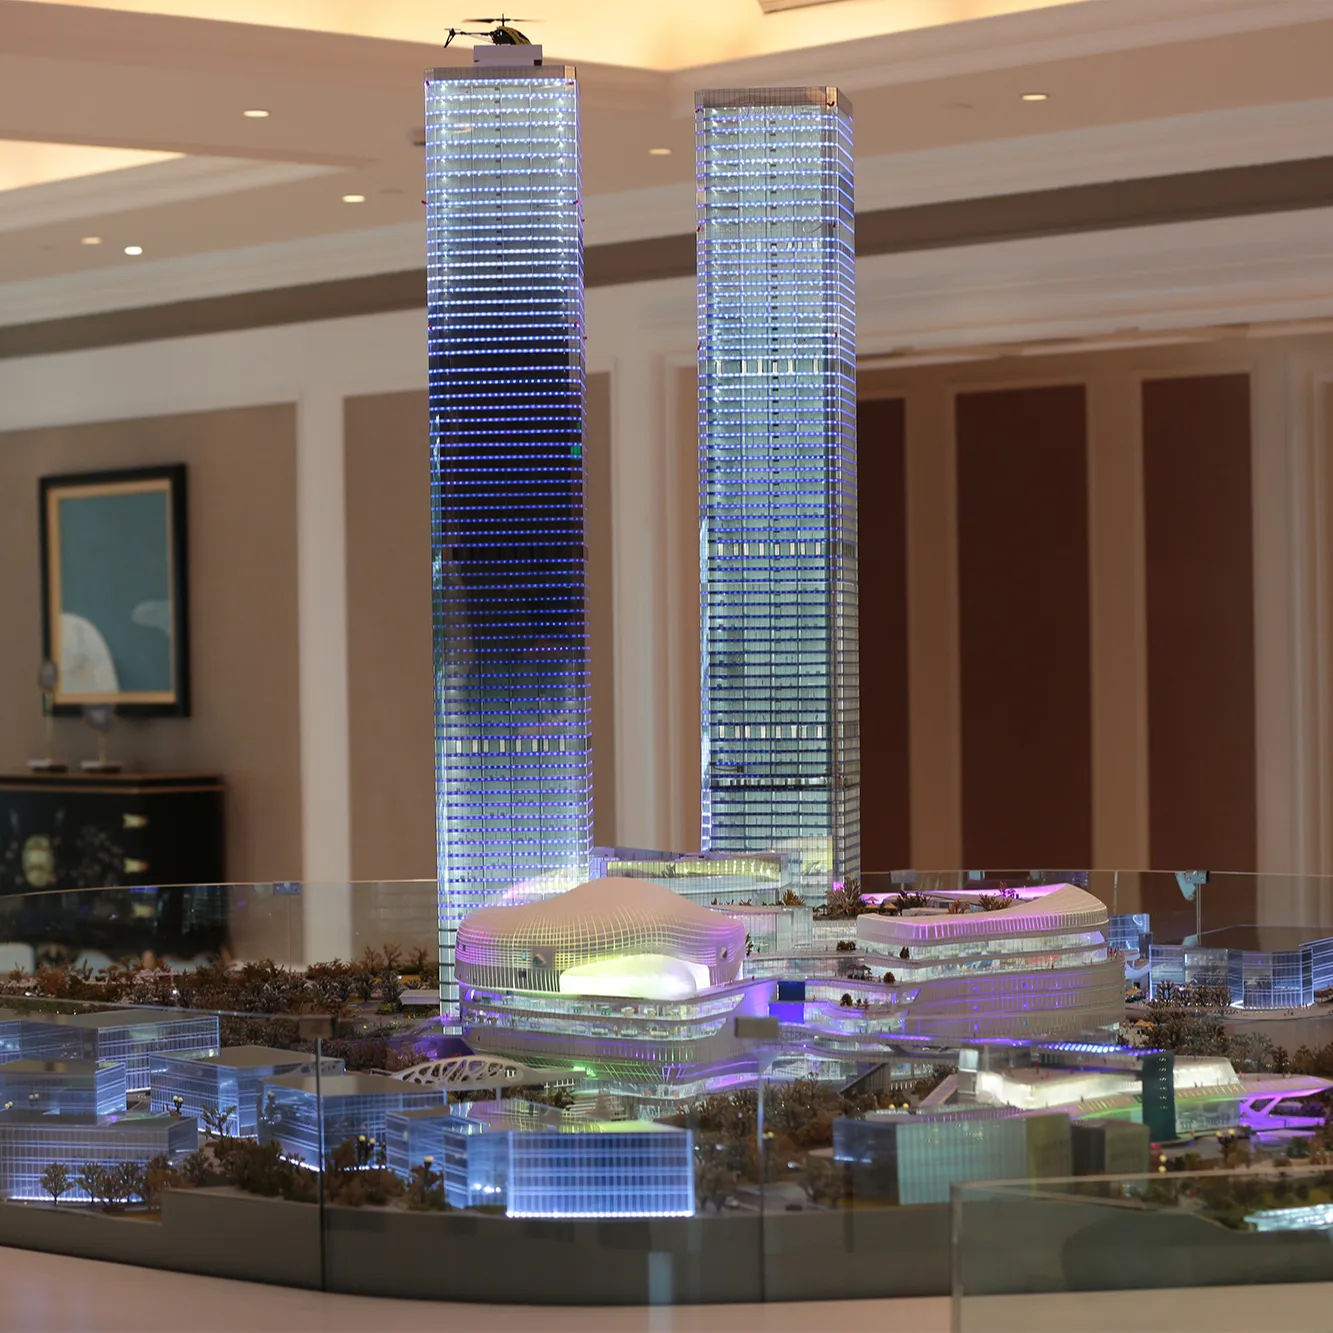 Profession elles Gebäude modell im architekto nischen Maßstab LED-Beleuchtung im benutzer definierten Maßstab Stadtplanung modell für 3D-Immobilien